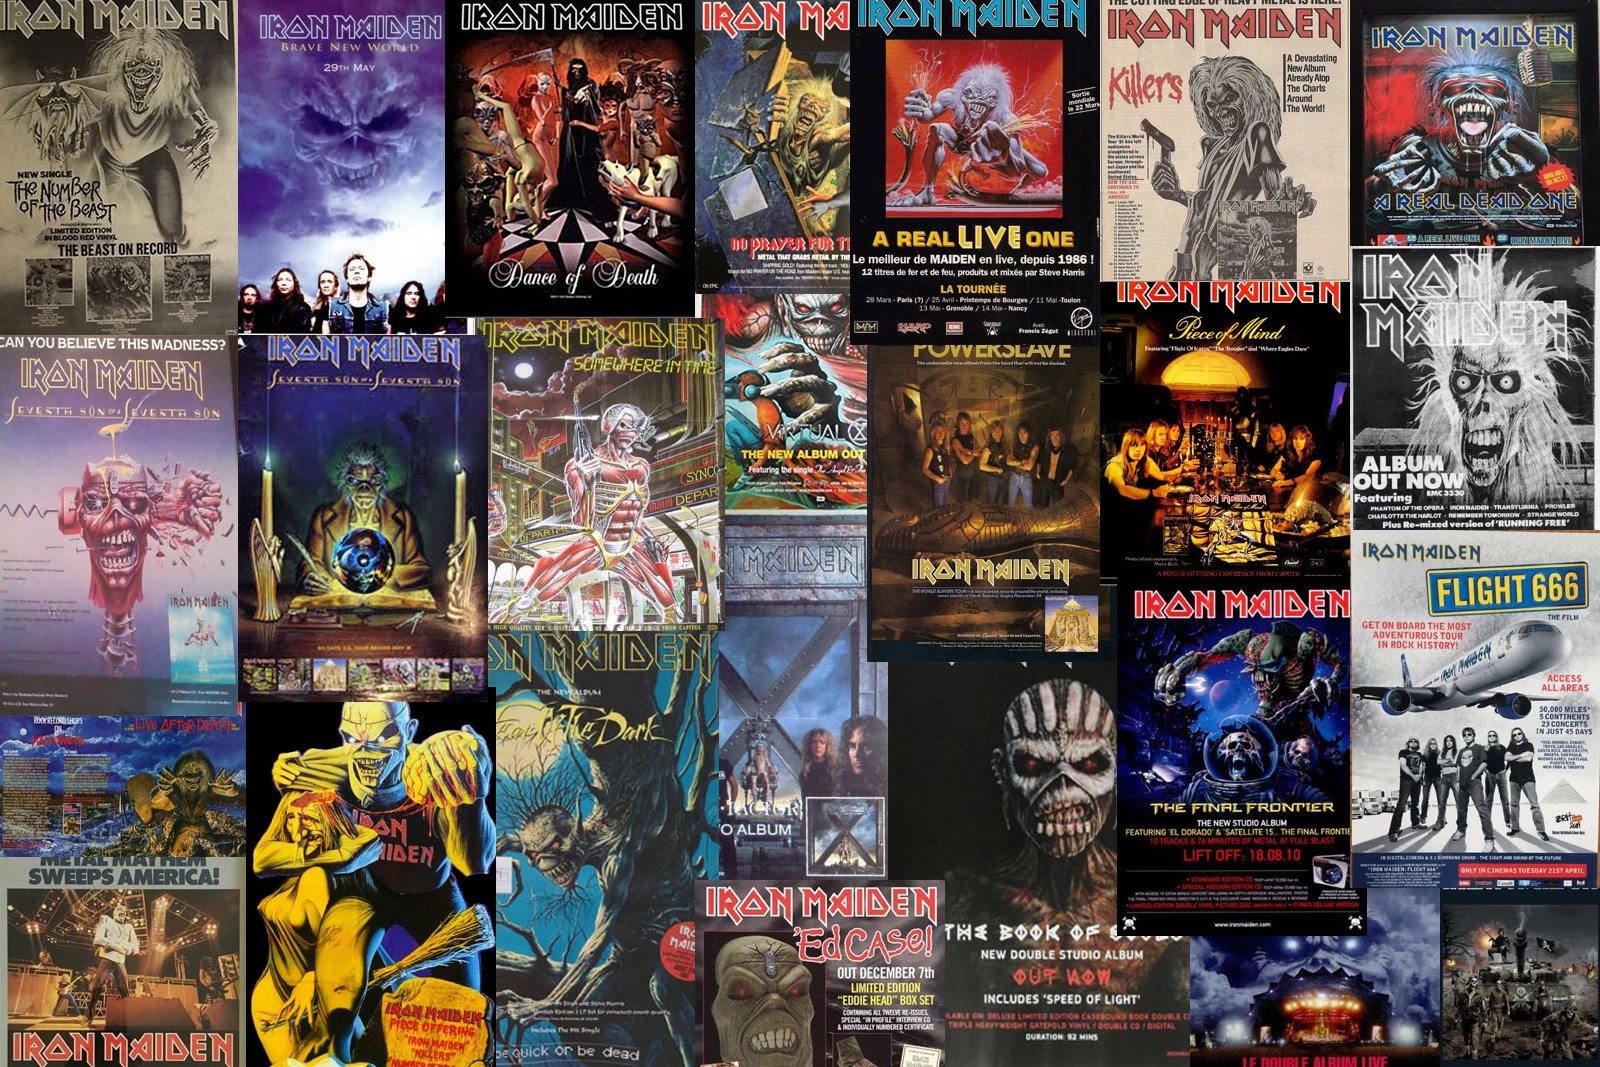 Iron Maiden Magazine Ads Through the Years: 1980-2017